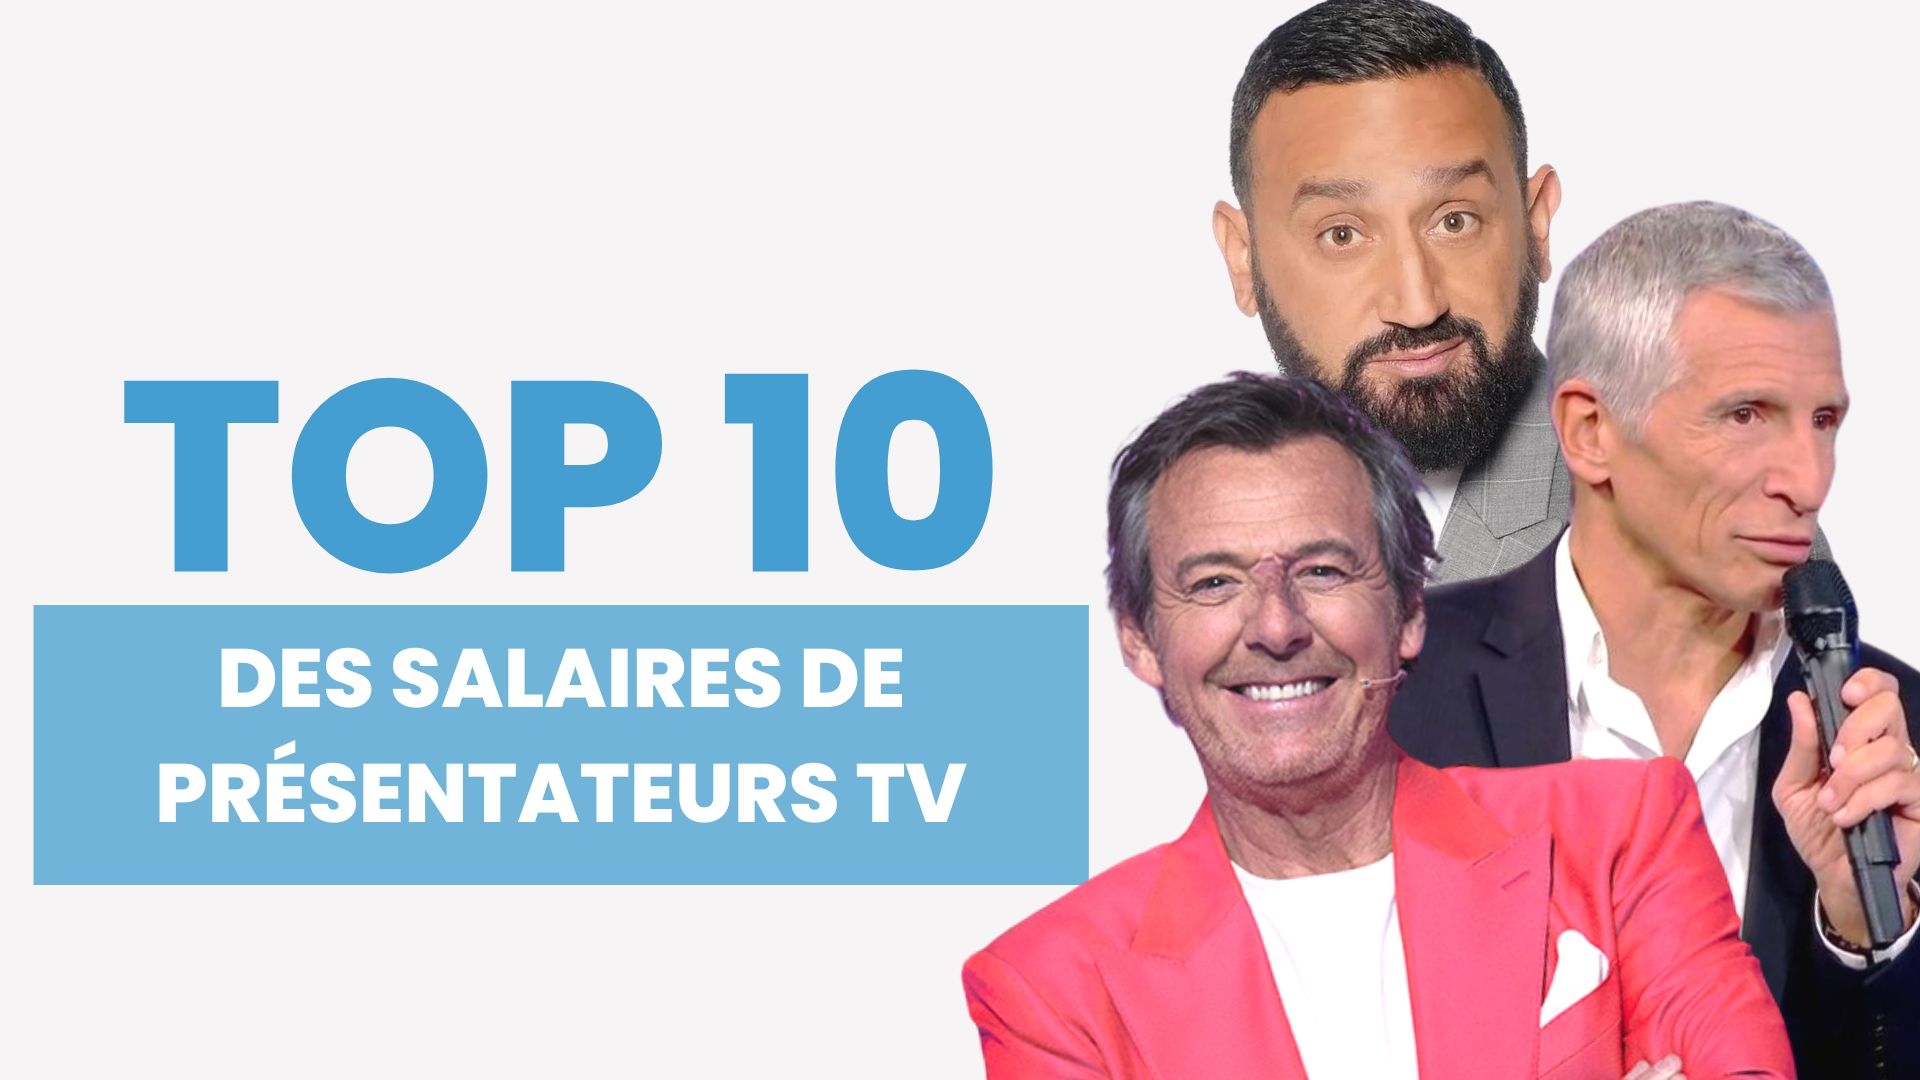 Nous vous révélons quels sont les présentateurs de télévision les mieux payés en France